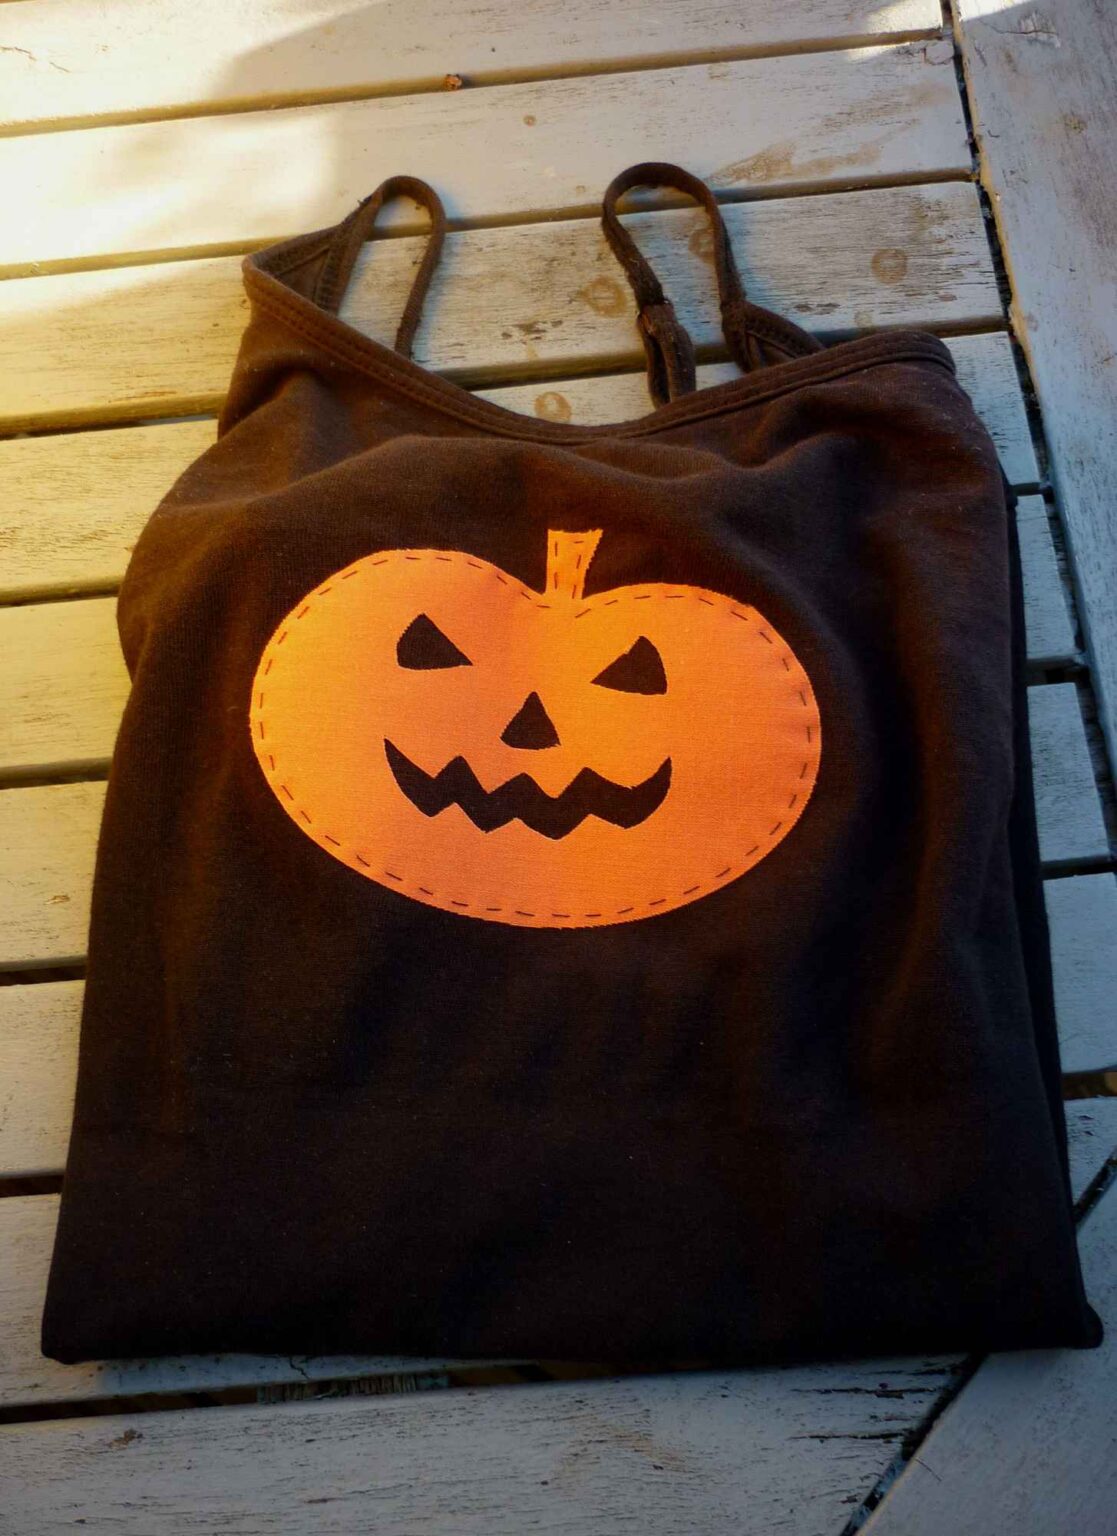 Black vest with orange pumpkin face motif folded on table